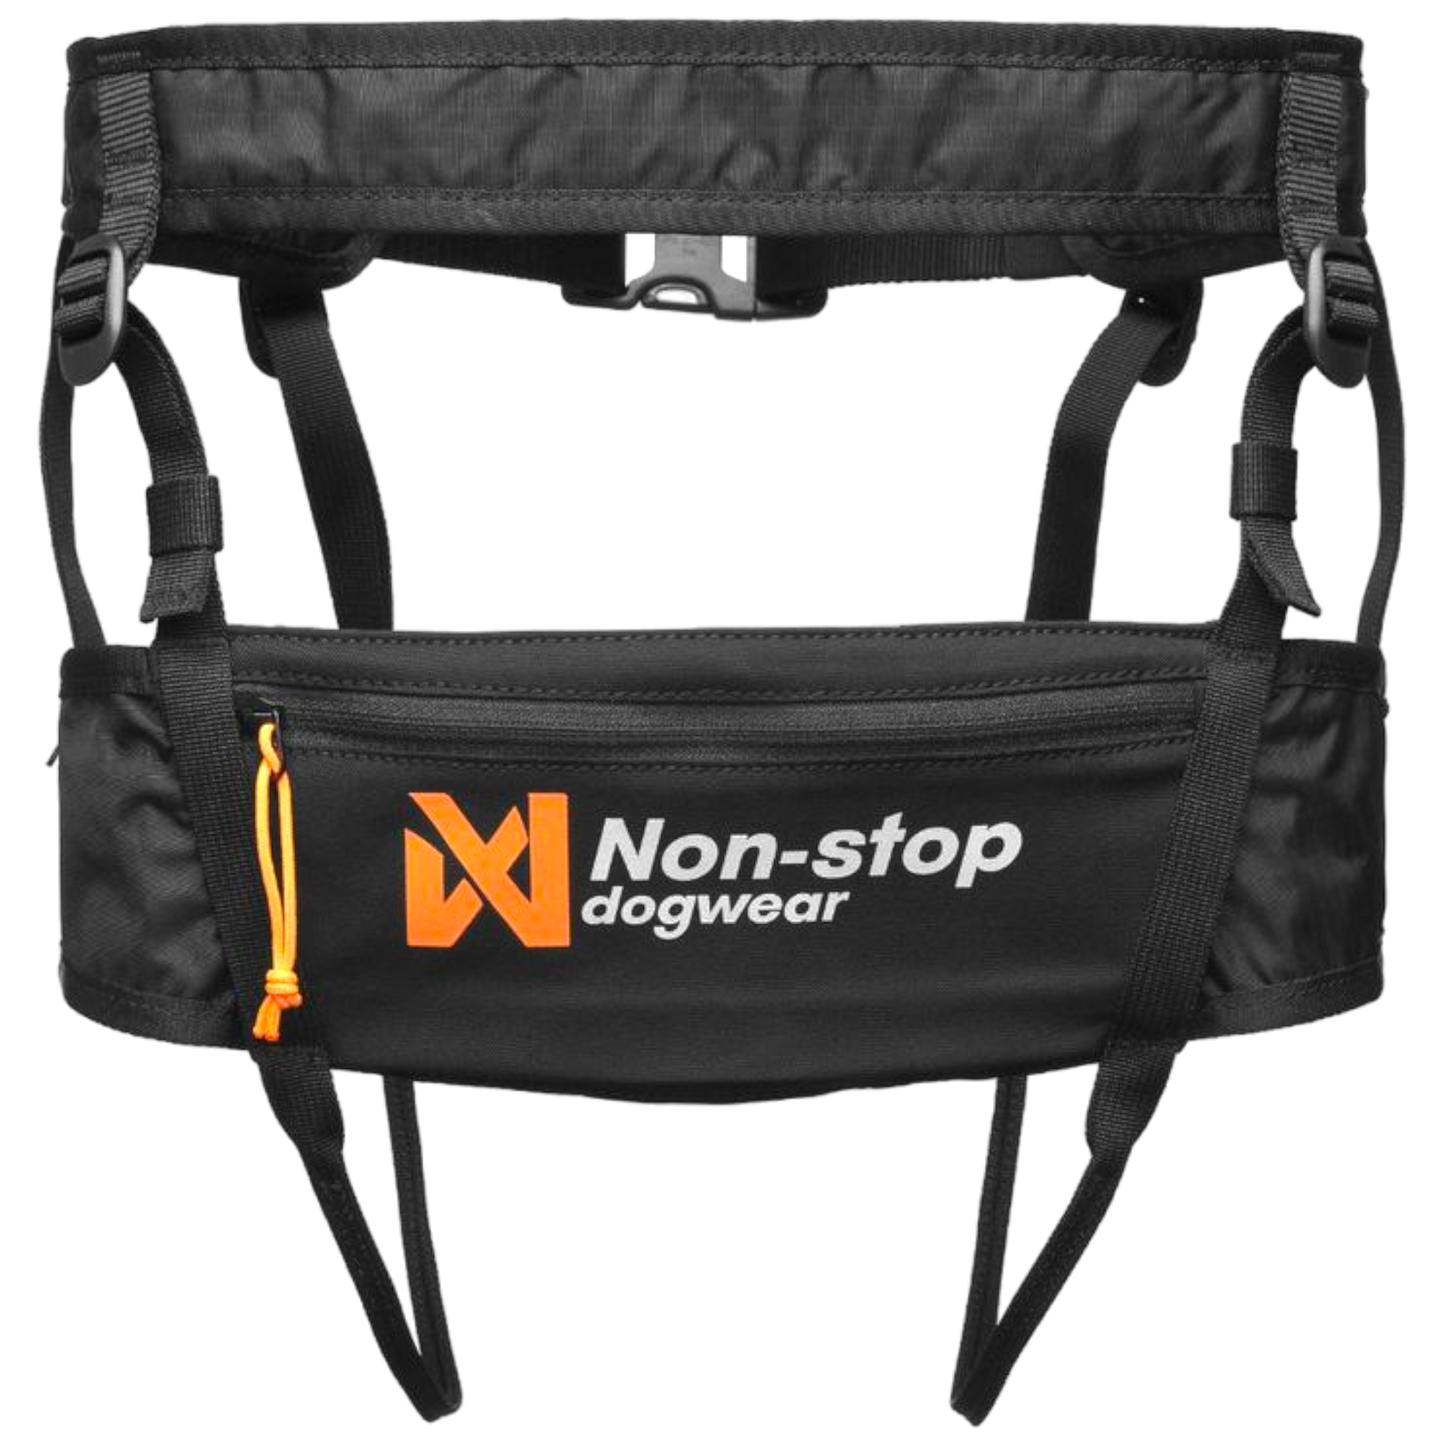 Non-stop  dogwear Canix belt 2.0 - Canicross belt